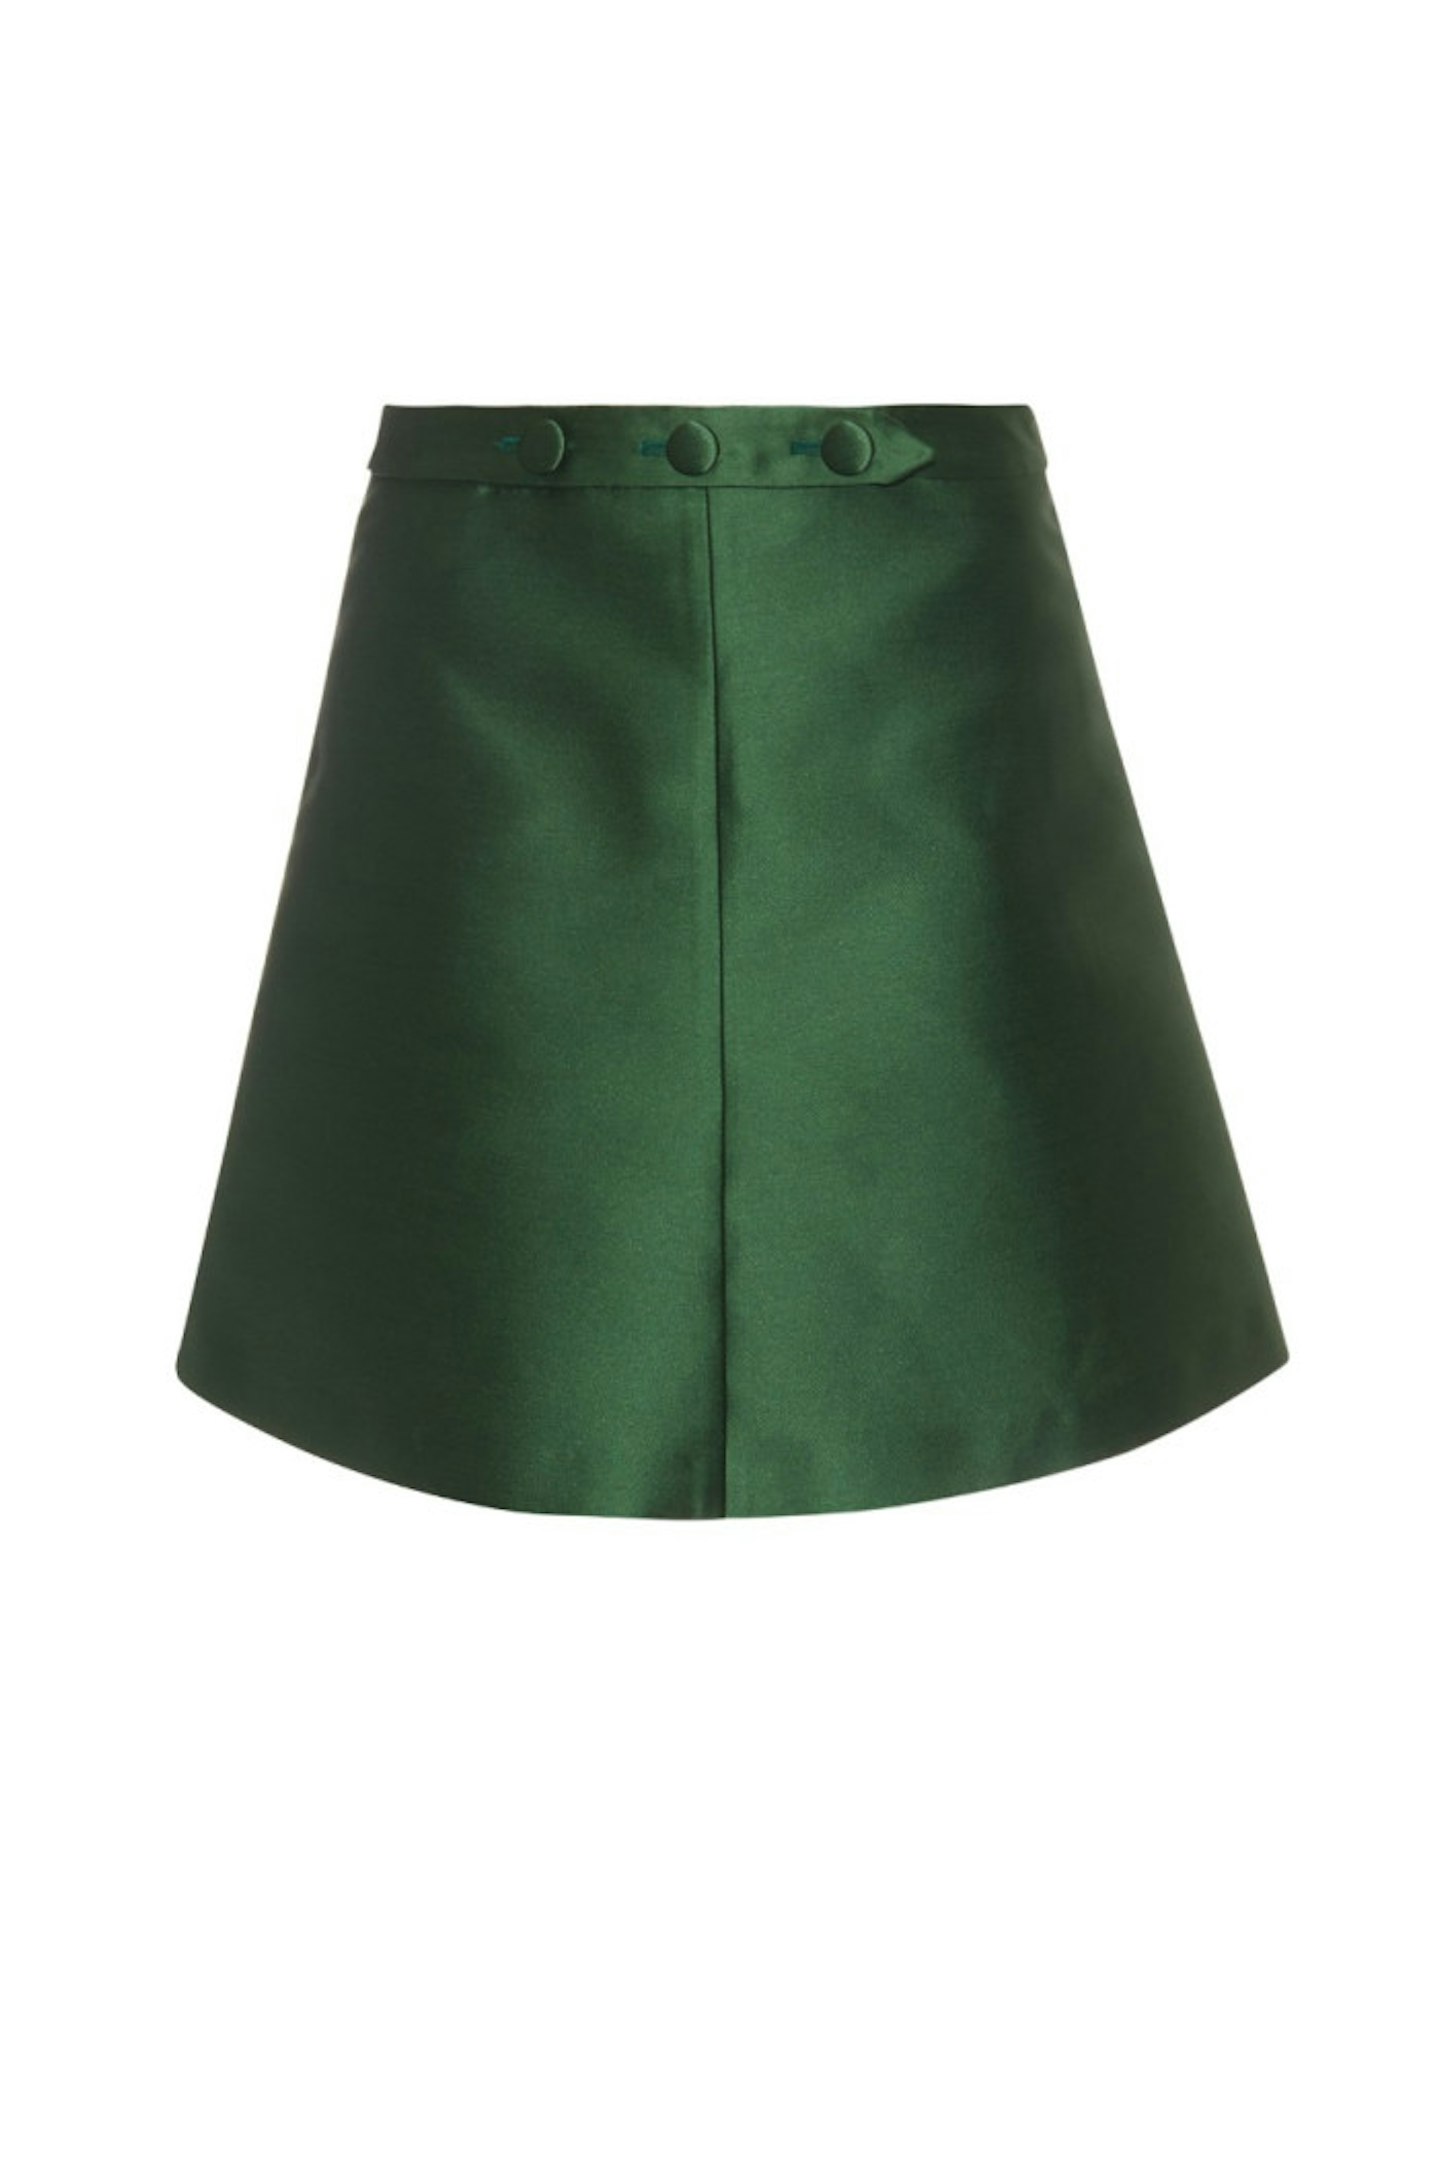 Valentino Green Satin Mini Skirt, £230.00